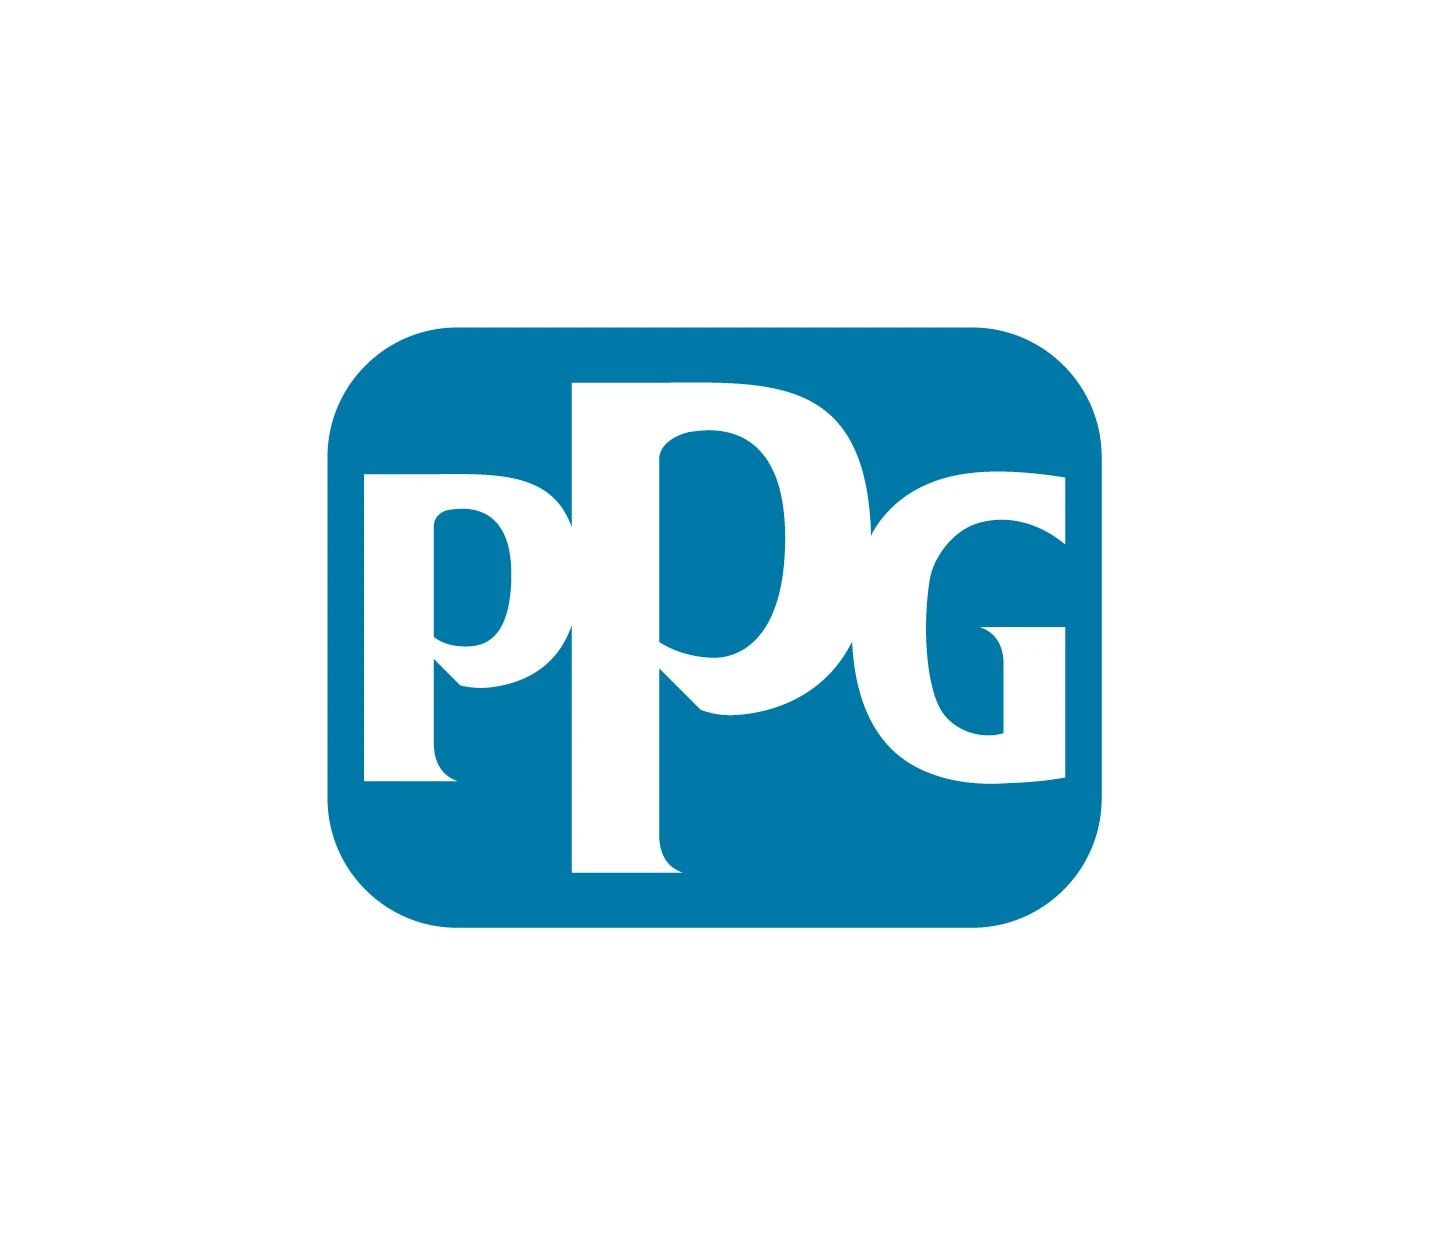 Oficinas PPG Uruguay